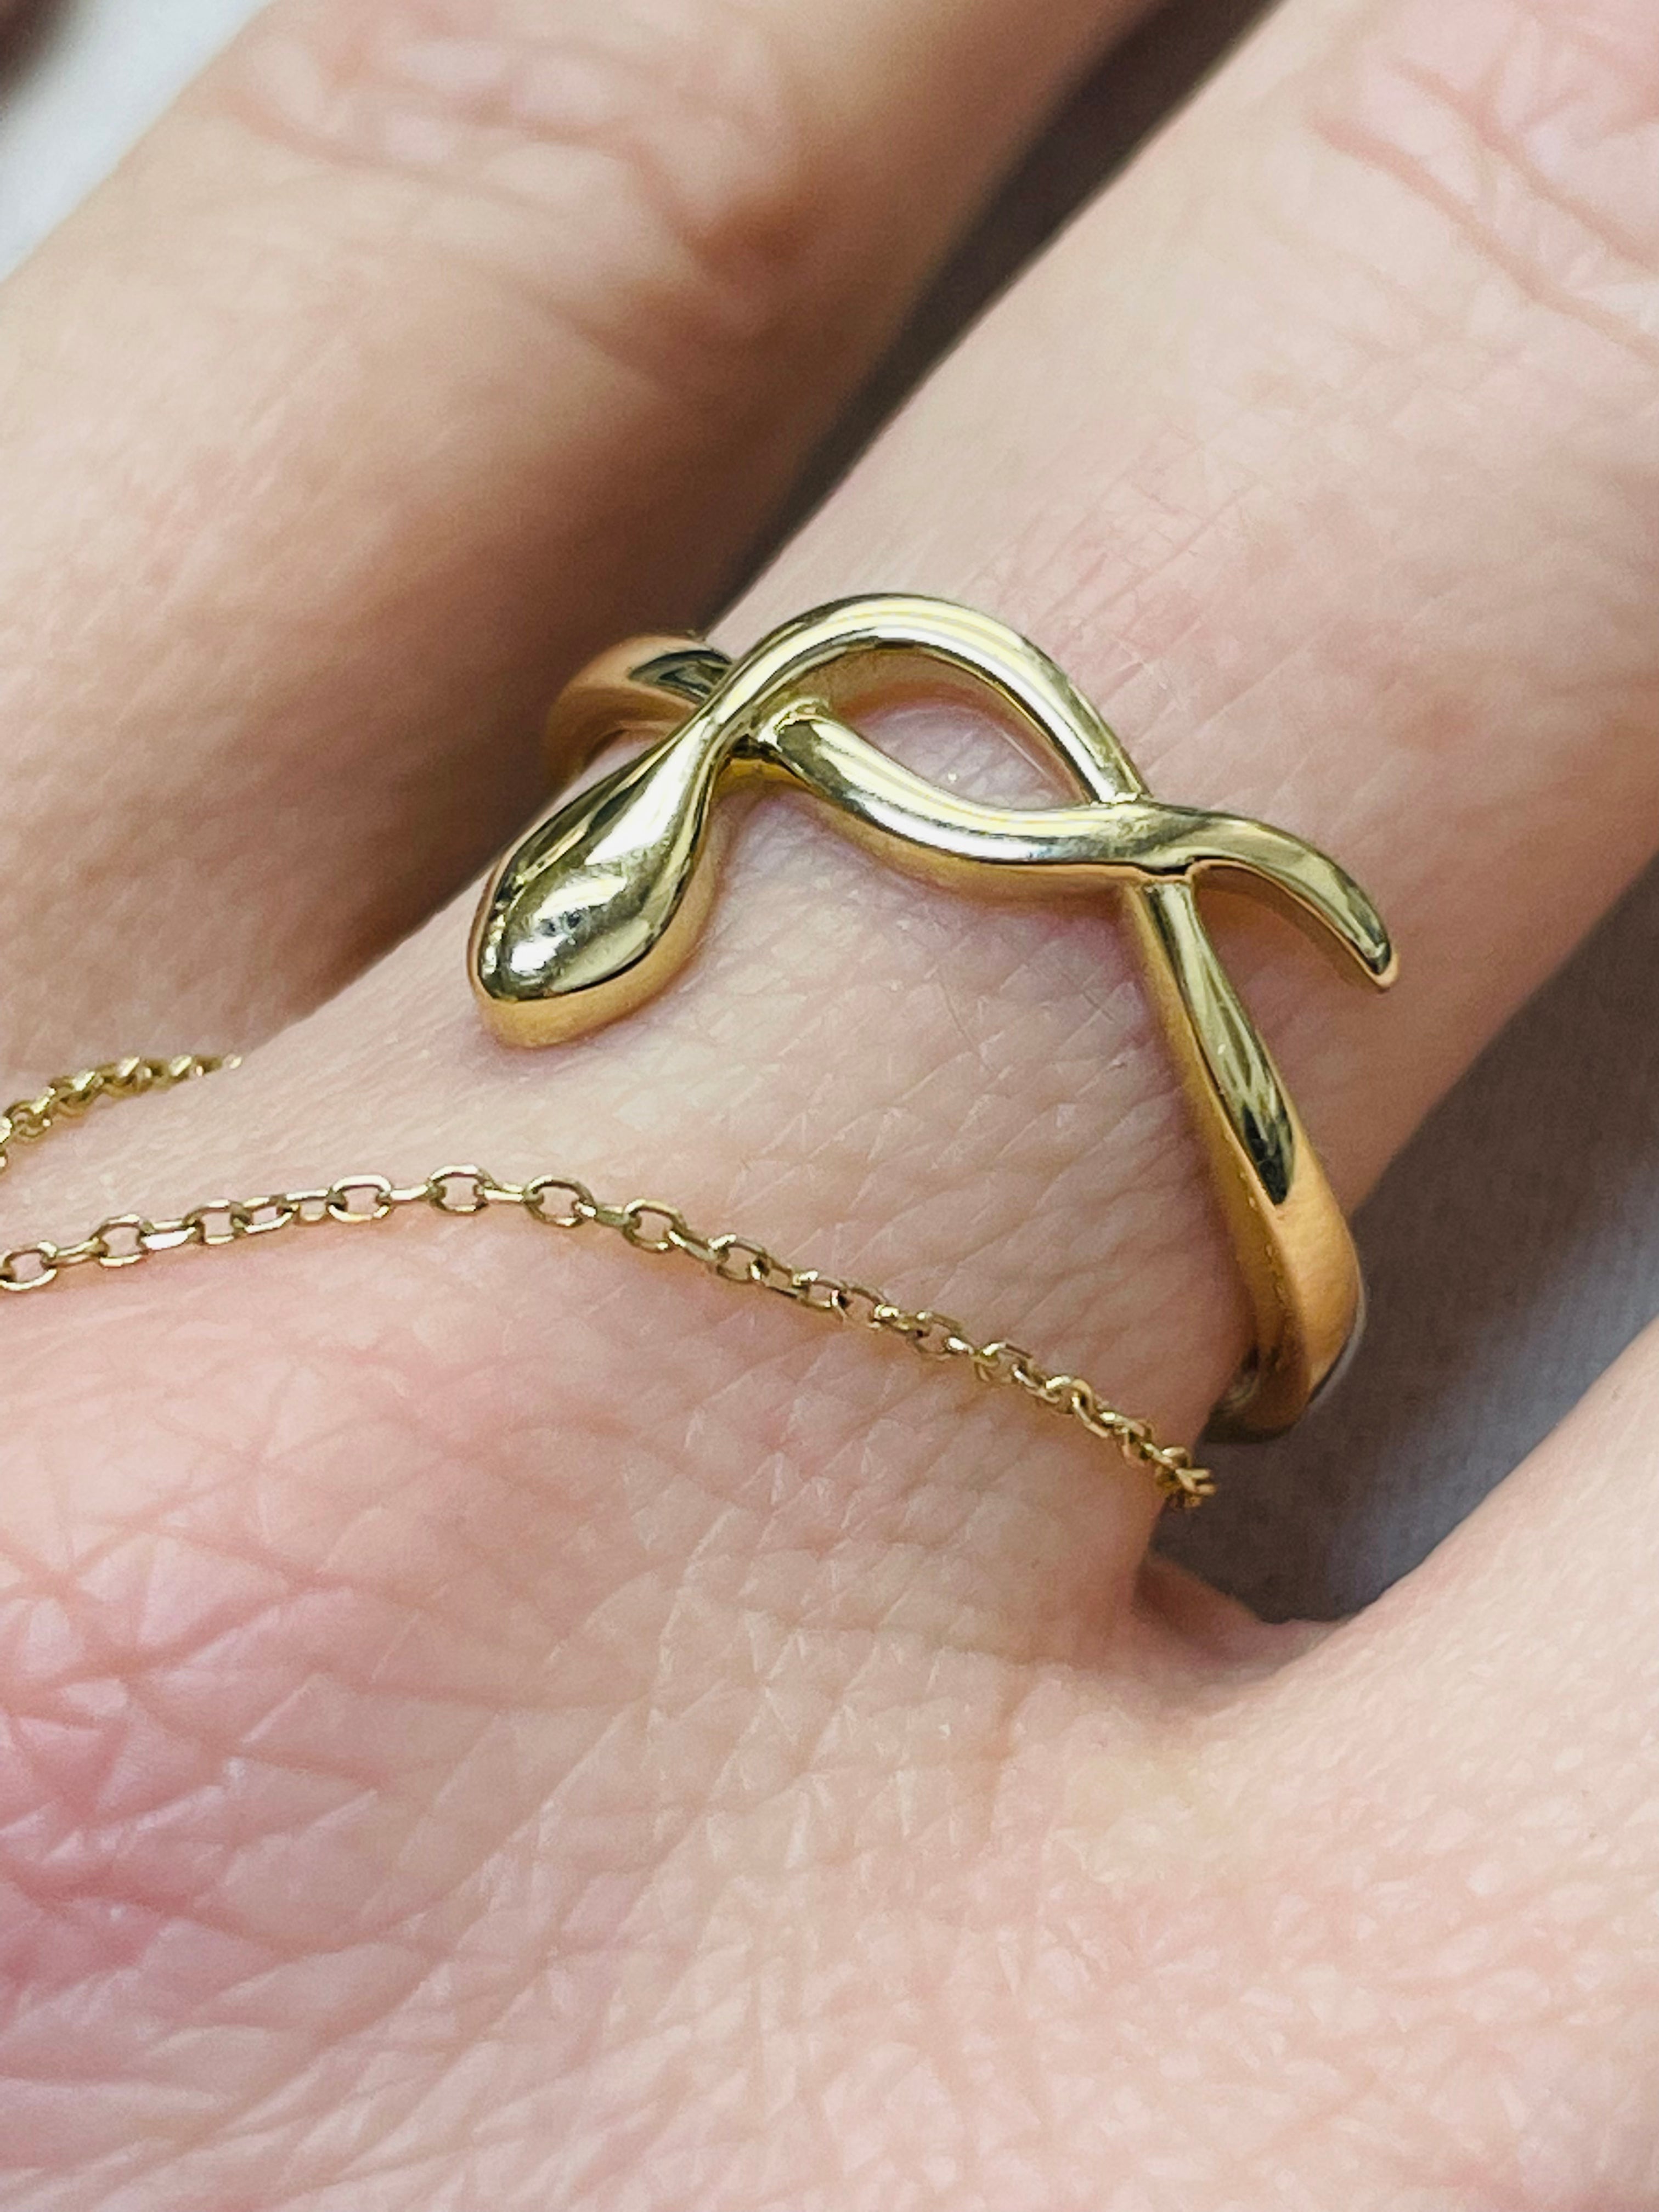 Sleek 18K Yellow Gold Snake Ring Size 7.25